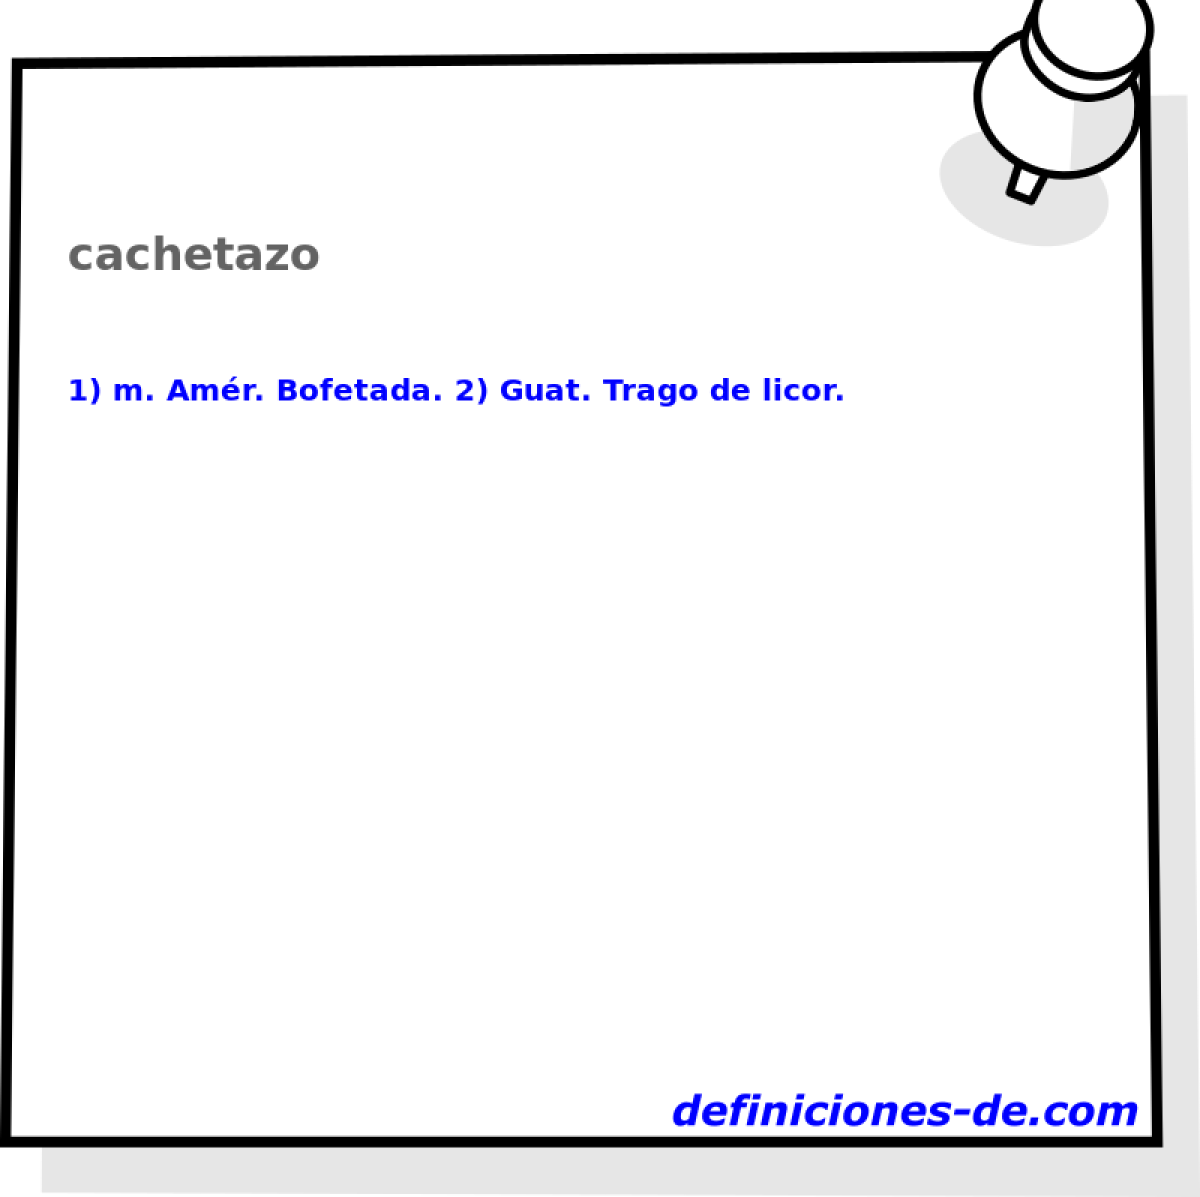 cachetazo 